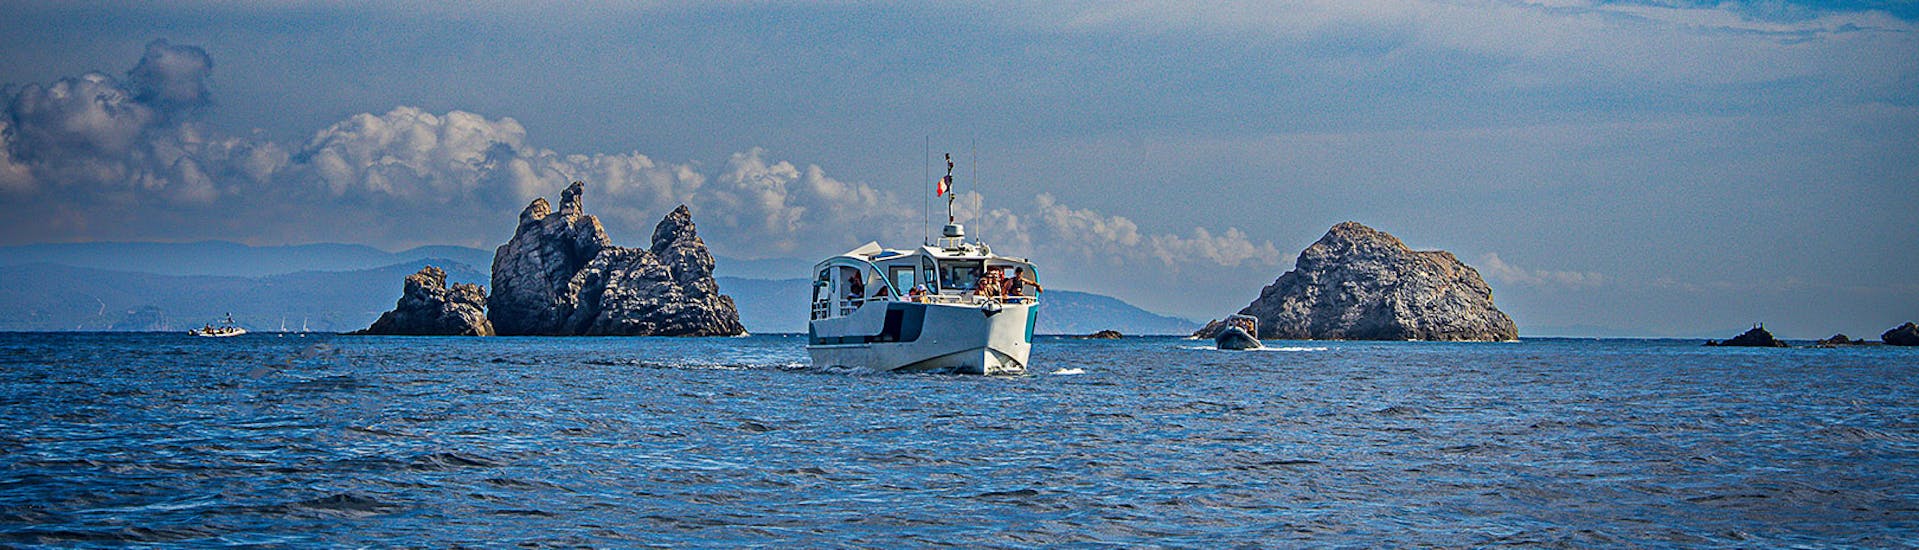 Magnifique paysage et bateau hybride durant la Navette aller-retour pour l'île de Porquerolles depuis Bormes-les-Mimosas avec Latitude Verte Bormes-les-Mimosas.